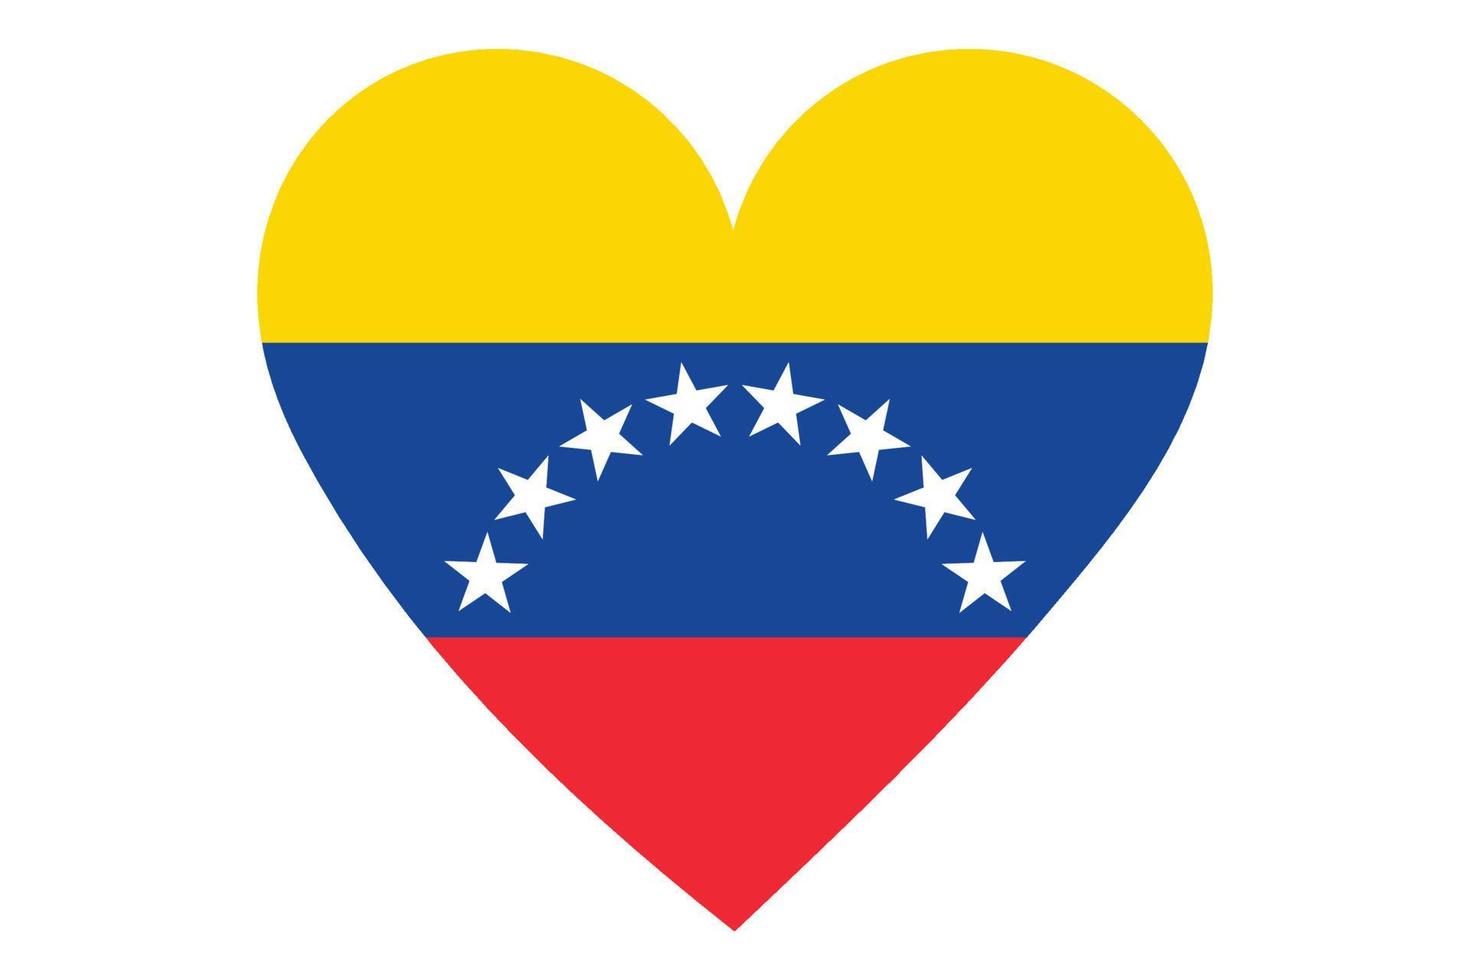 Heart flag vector of Venezuela on white background.